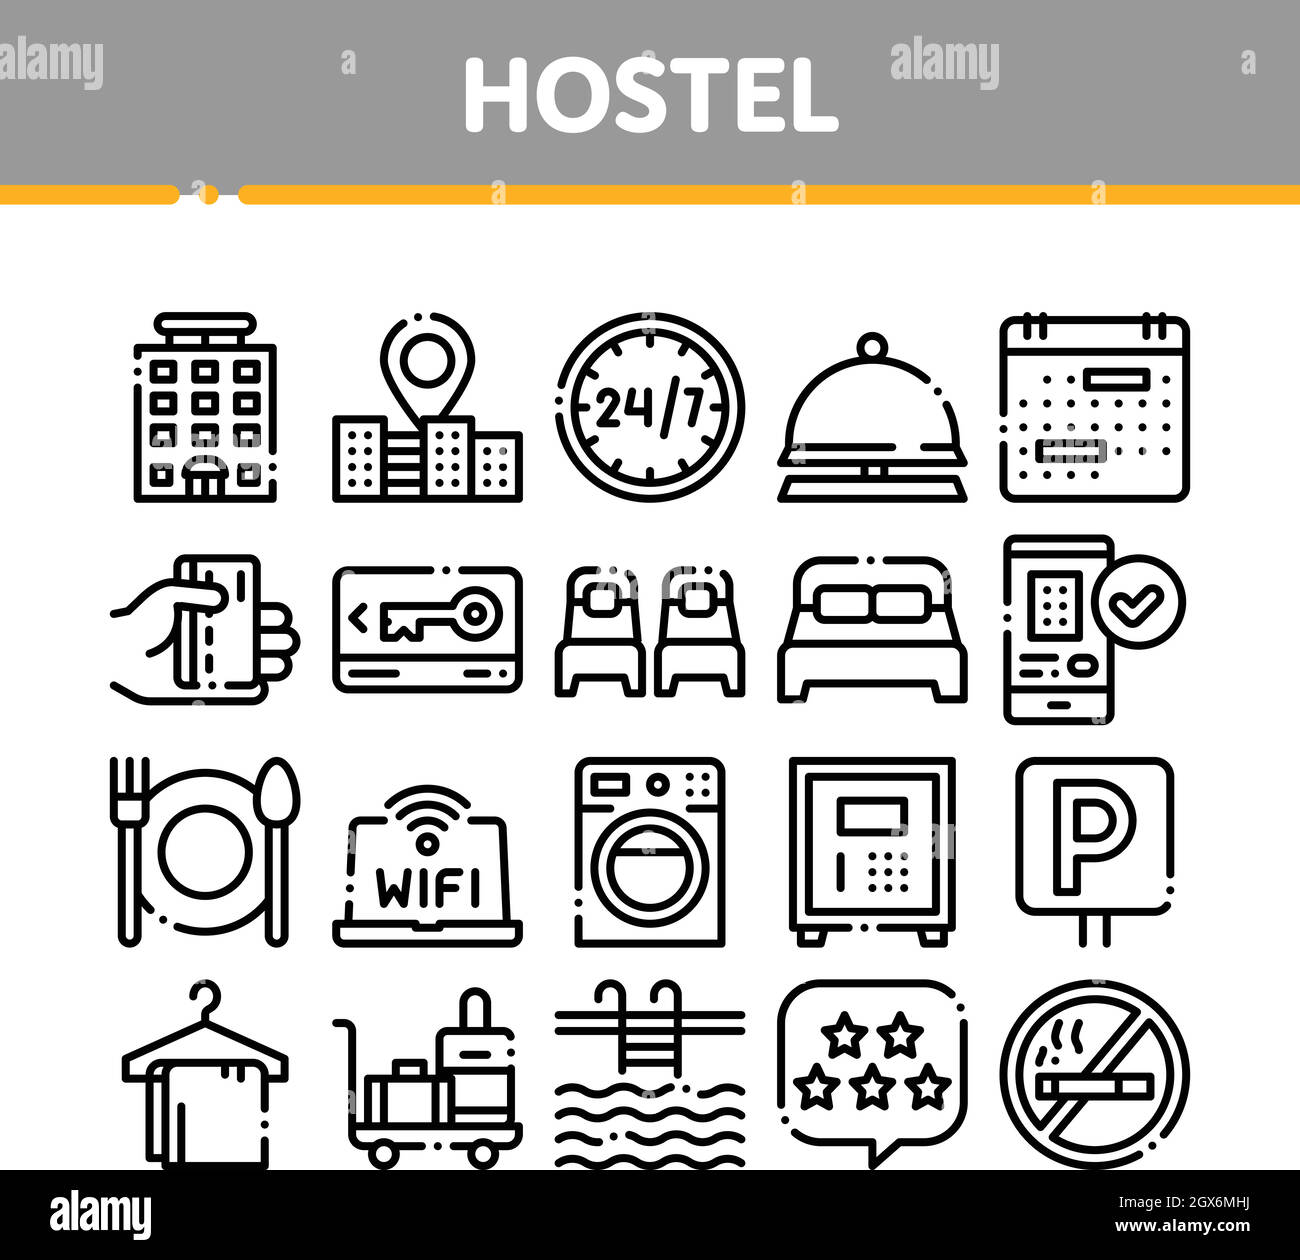 Sammlung Hostel Elemente Vektor Zeichen Symbole gesetzt Stock Vektor